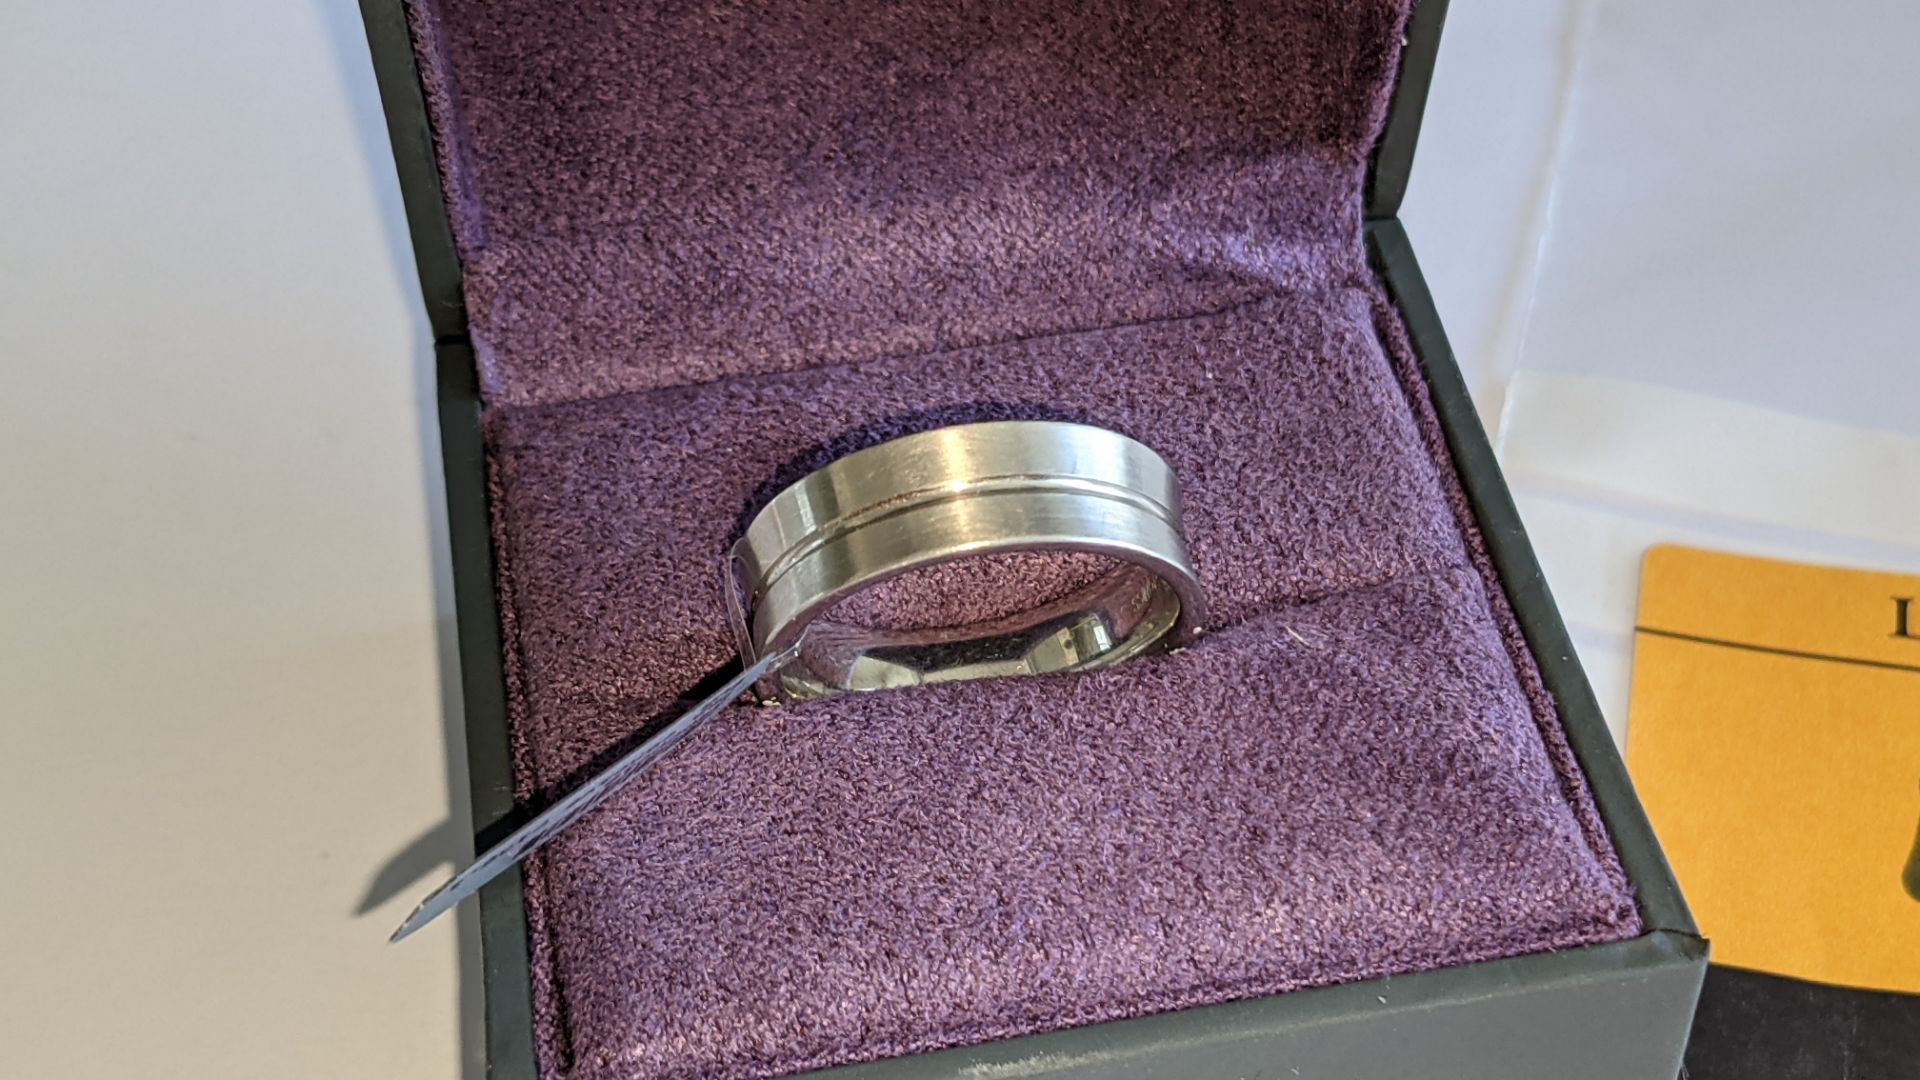 Palladium 950 7mm concave ring. RRP £1,900 - Image 2 of 16